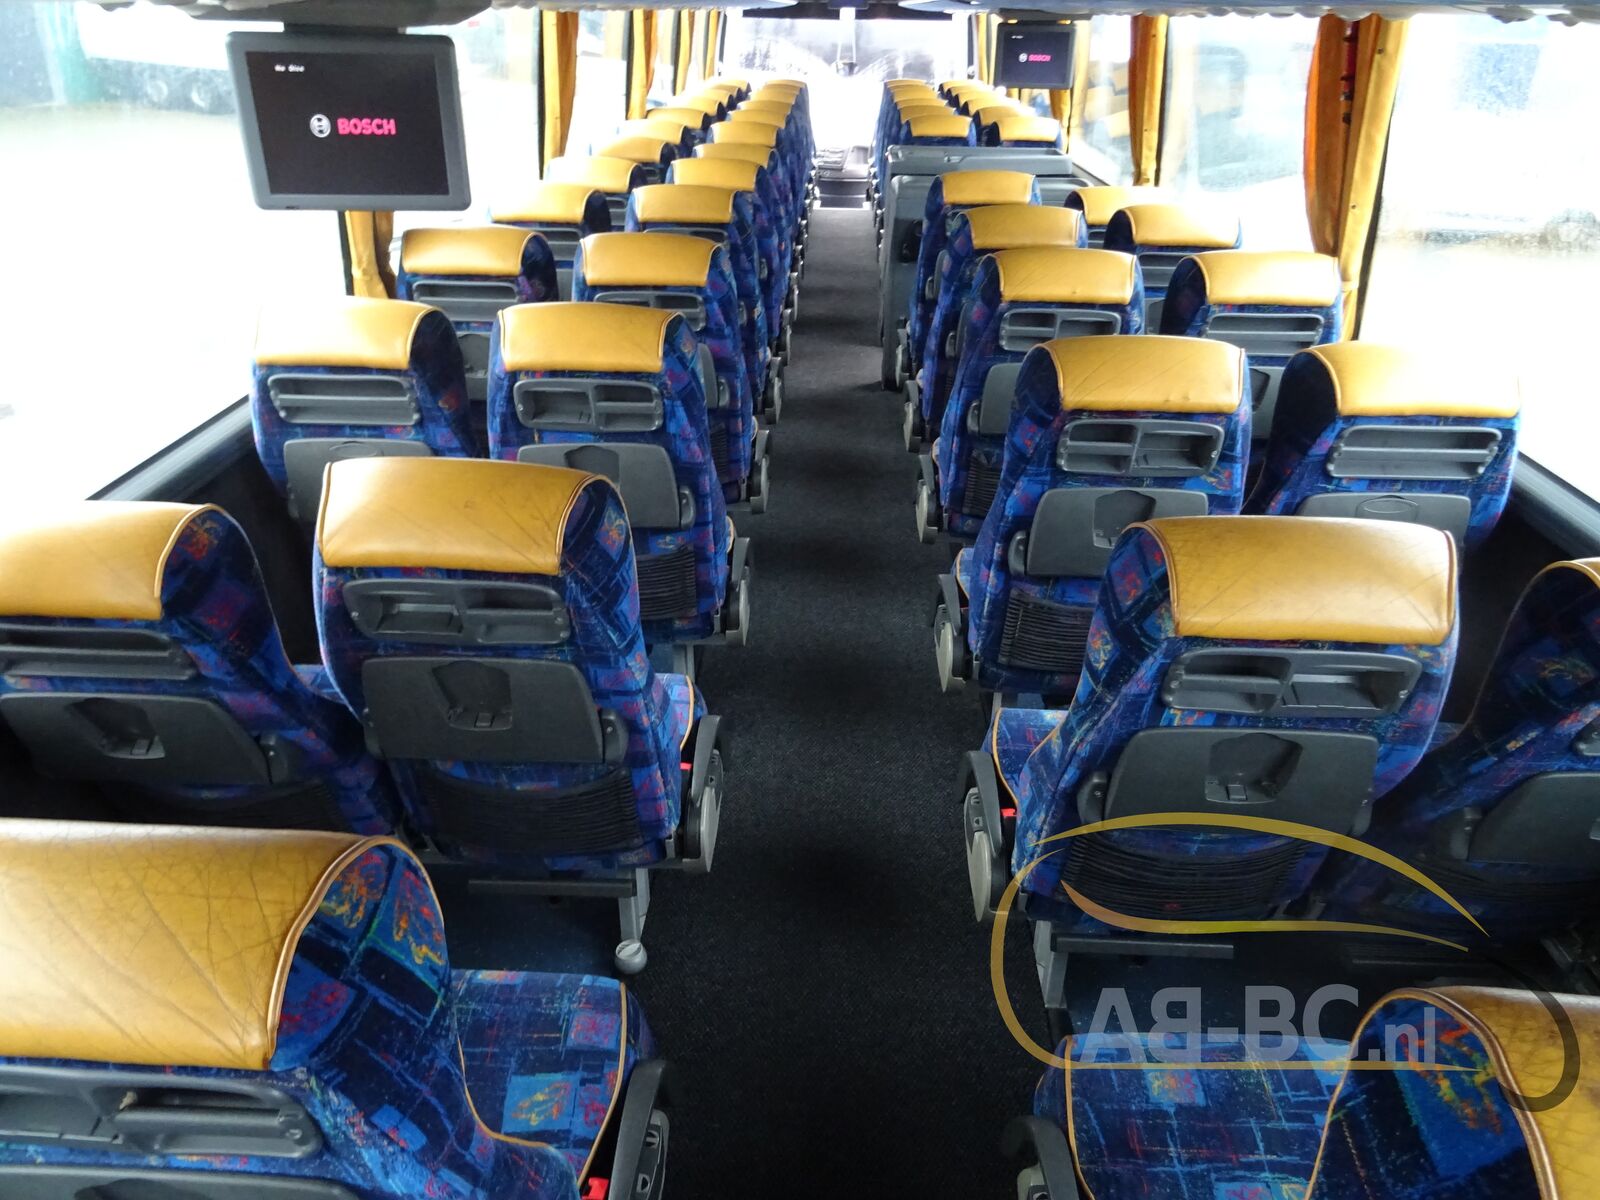 coach-bus-VDL-BOVA-Magiq-61-Seats---1641303518436294213_orig_67255b100d0dfddca4168ed770b549f0--22010415282369368500